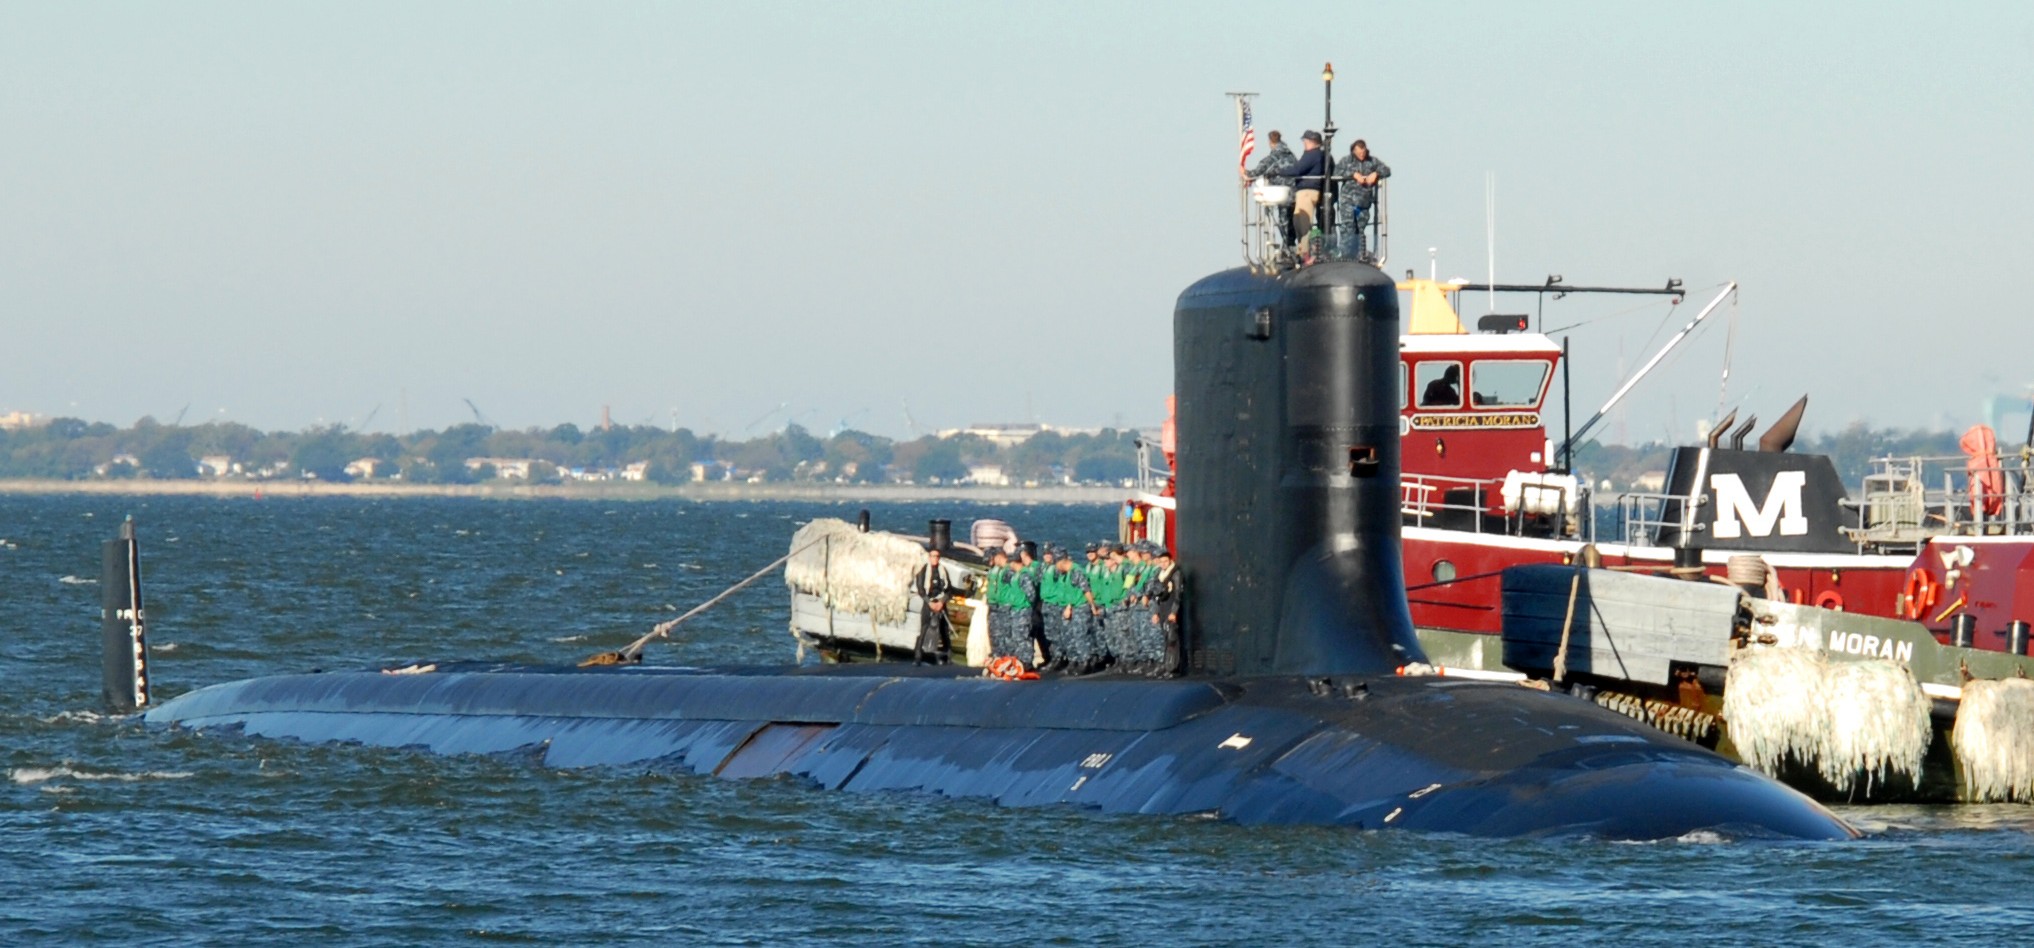 ssn-781 uss california virginia class attack submarine us navy 15 naval station norfolk virginia